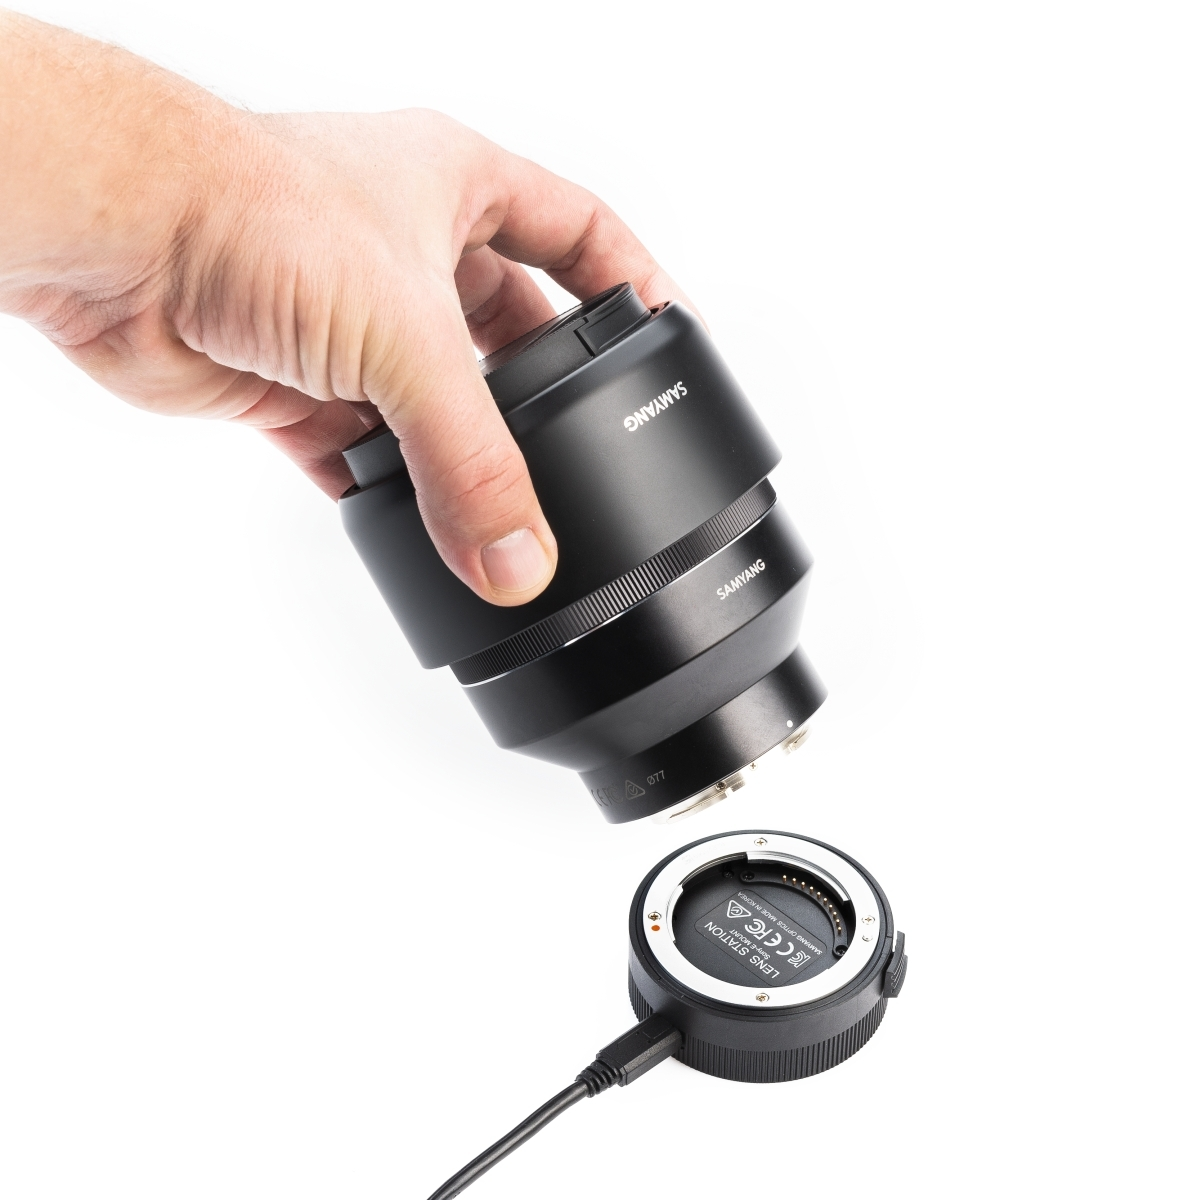 für AF 0 schwarz E-Mount, für Sony weiß) / Lens millimetres Manager Sony E SAMYANG (Lens Station